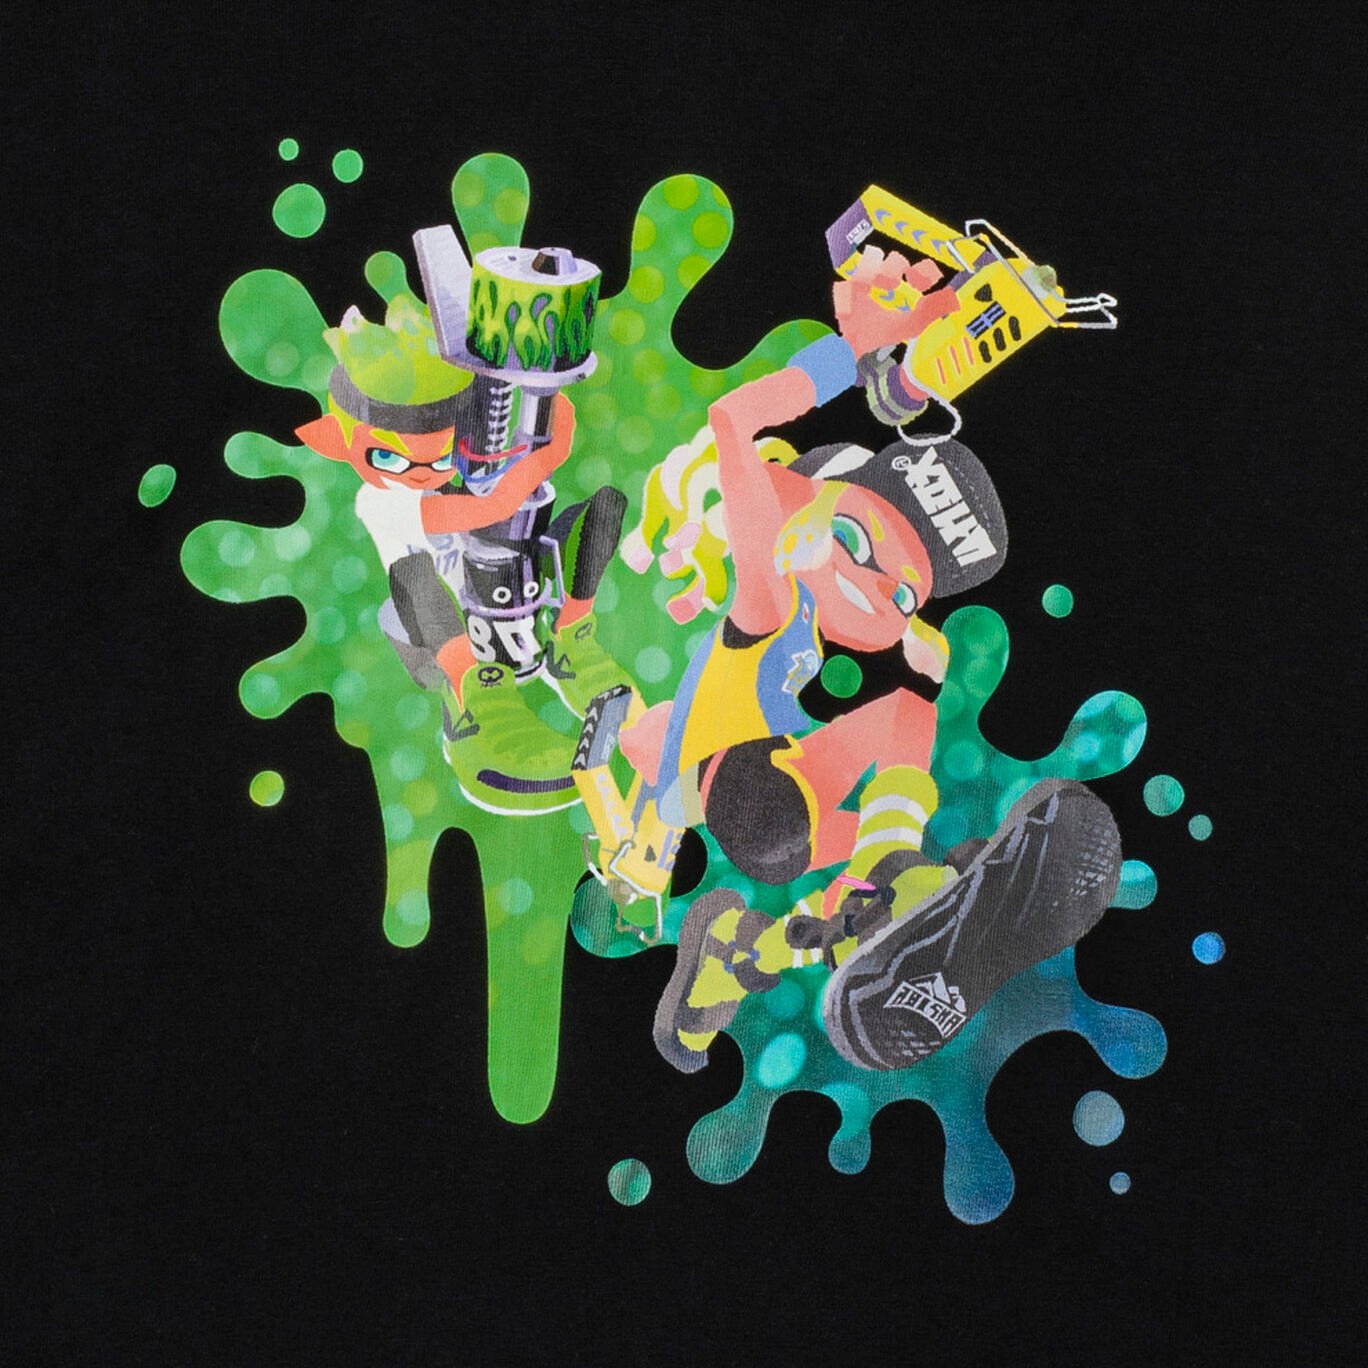 Tシャツ黒 S SQUID or OCTO Splatoon【Nintendo TOKYO取り扱い商品】